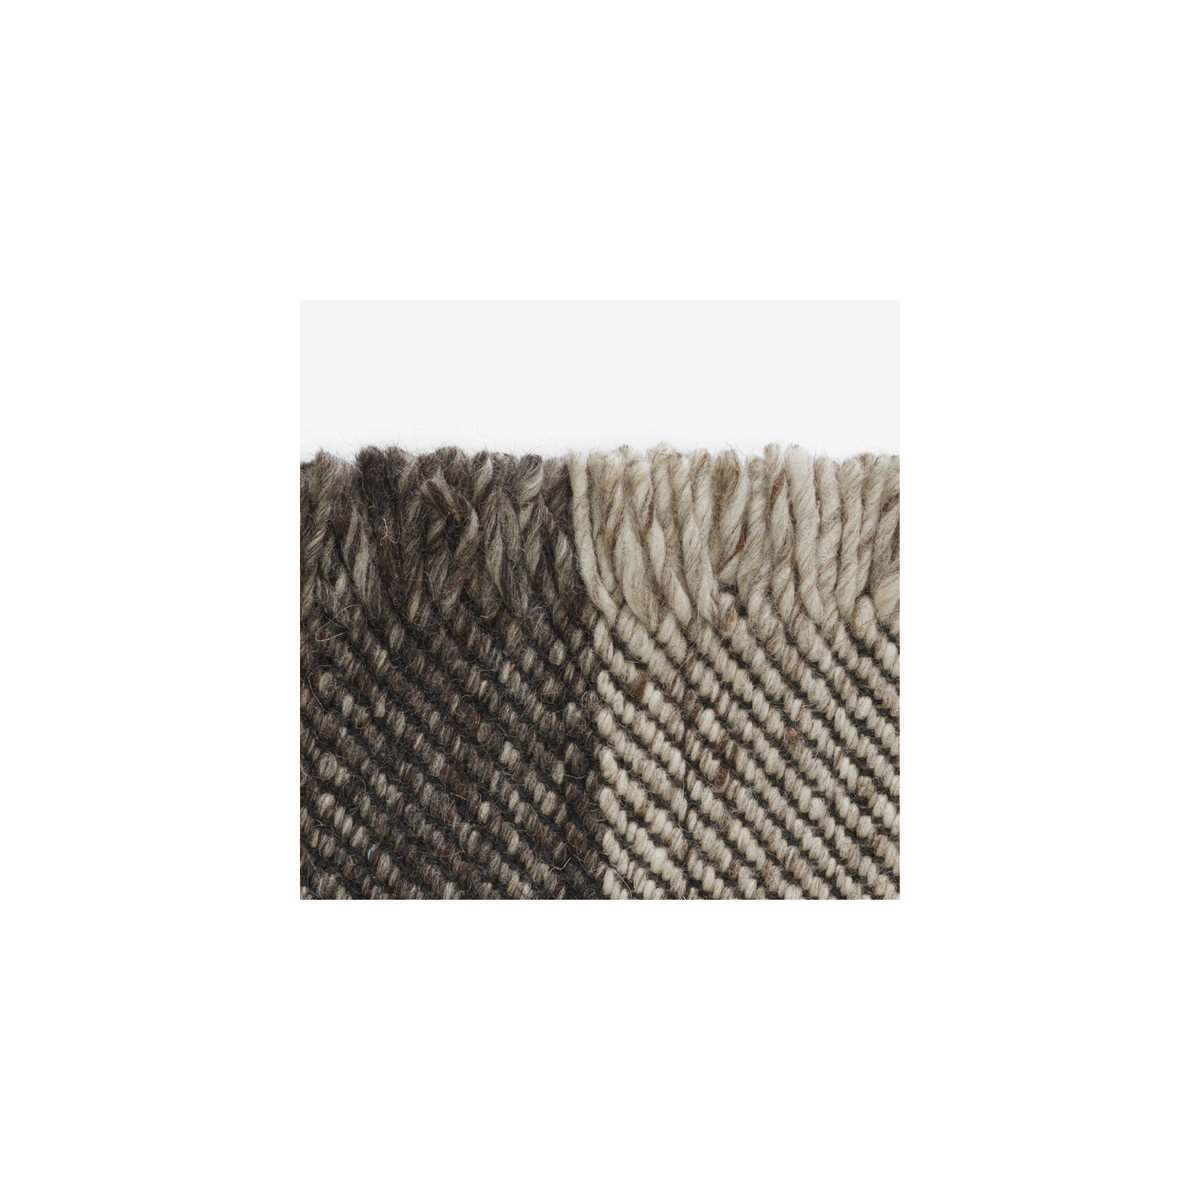 180x240cm - 0192 - Fringe rug